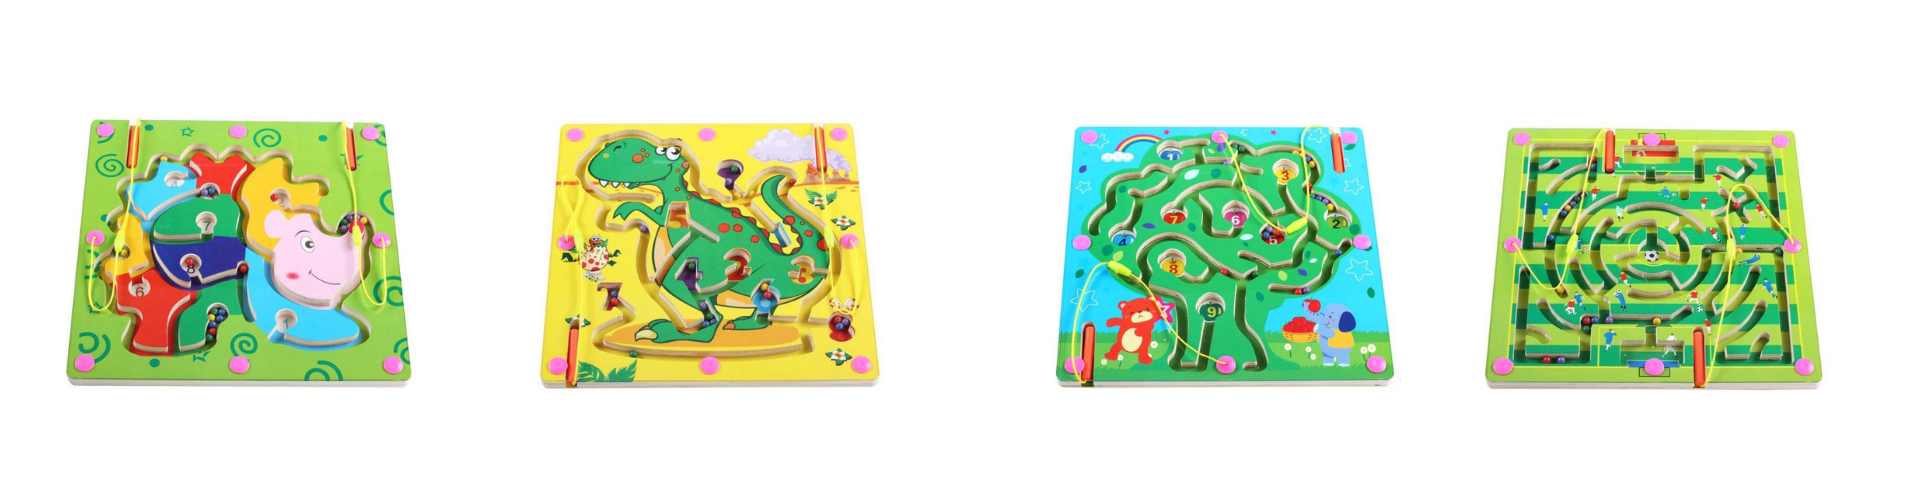 labyrinthes magnétiques pour enfant de chez univers magnétique jeux aimantés magnétiques